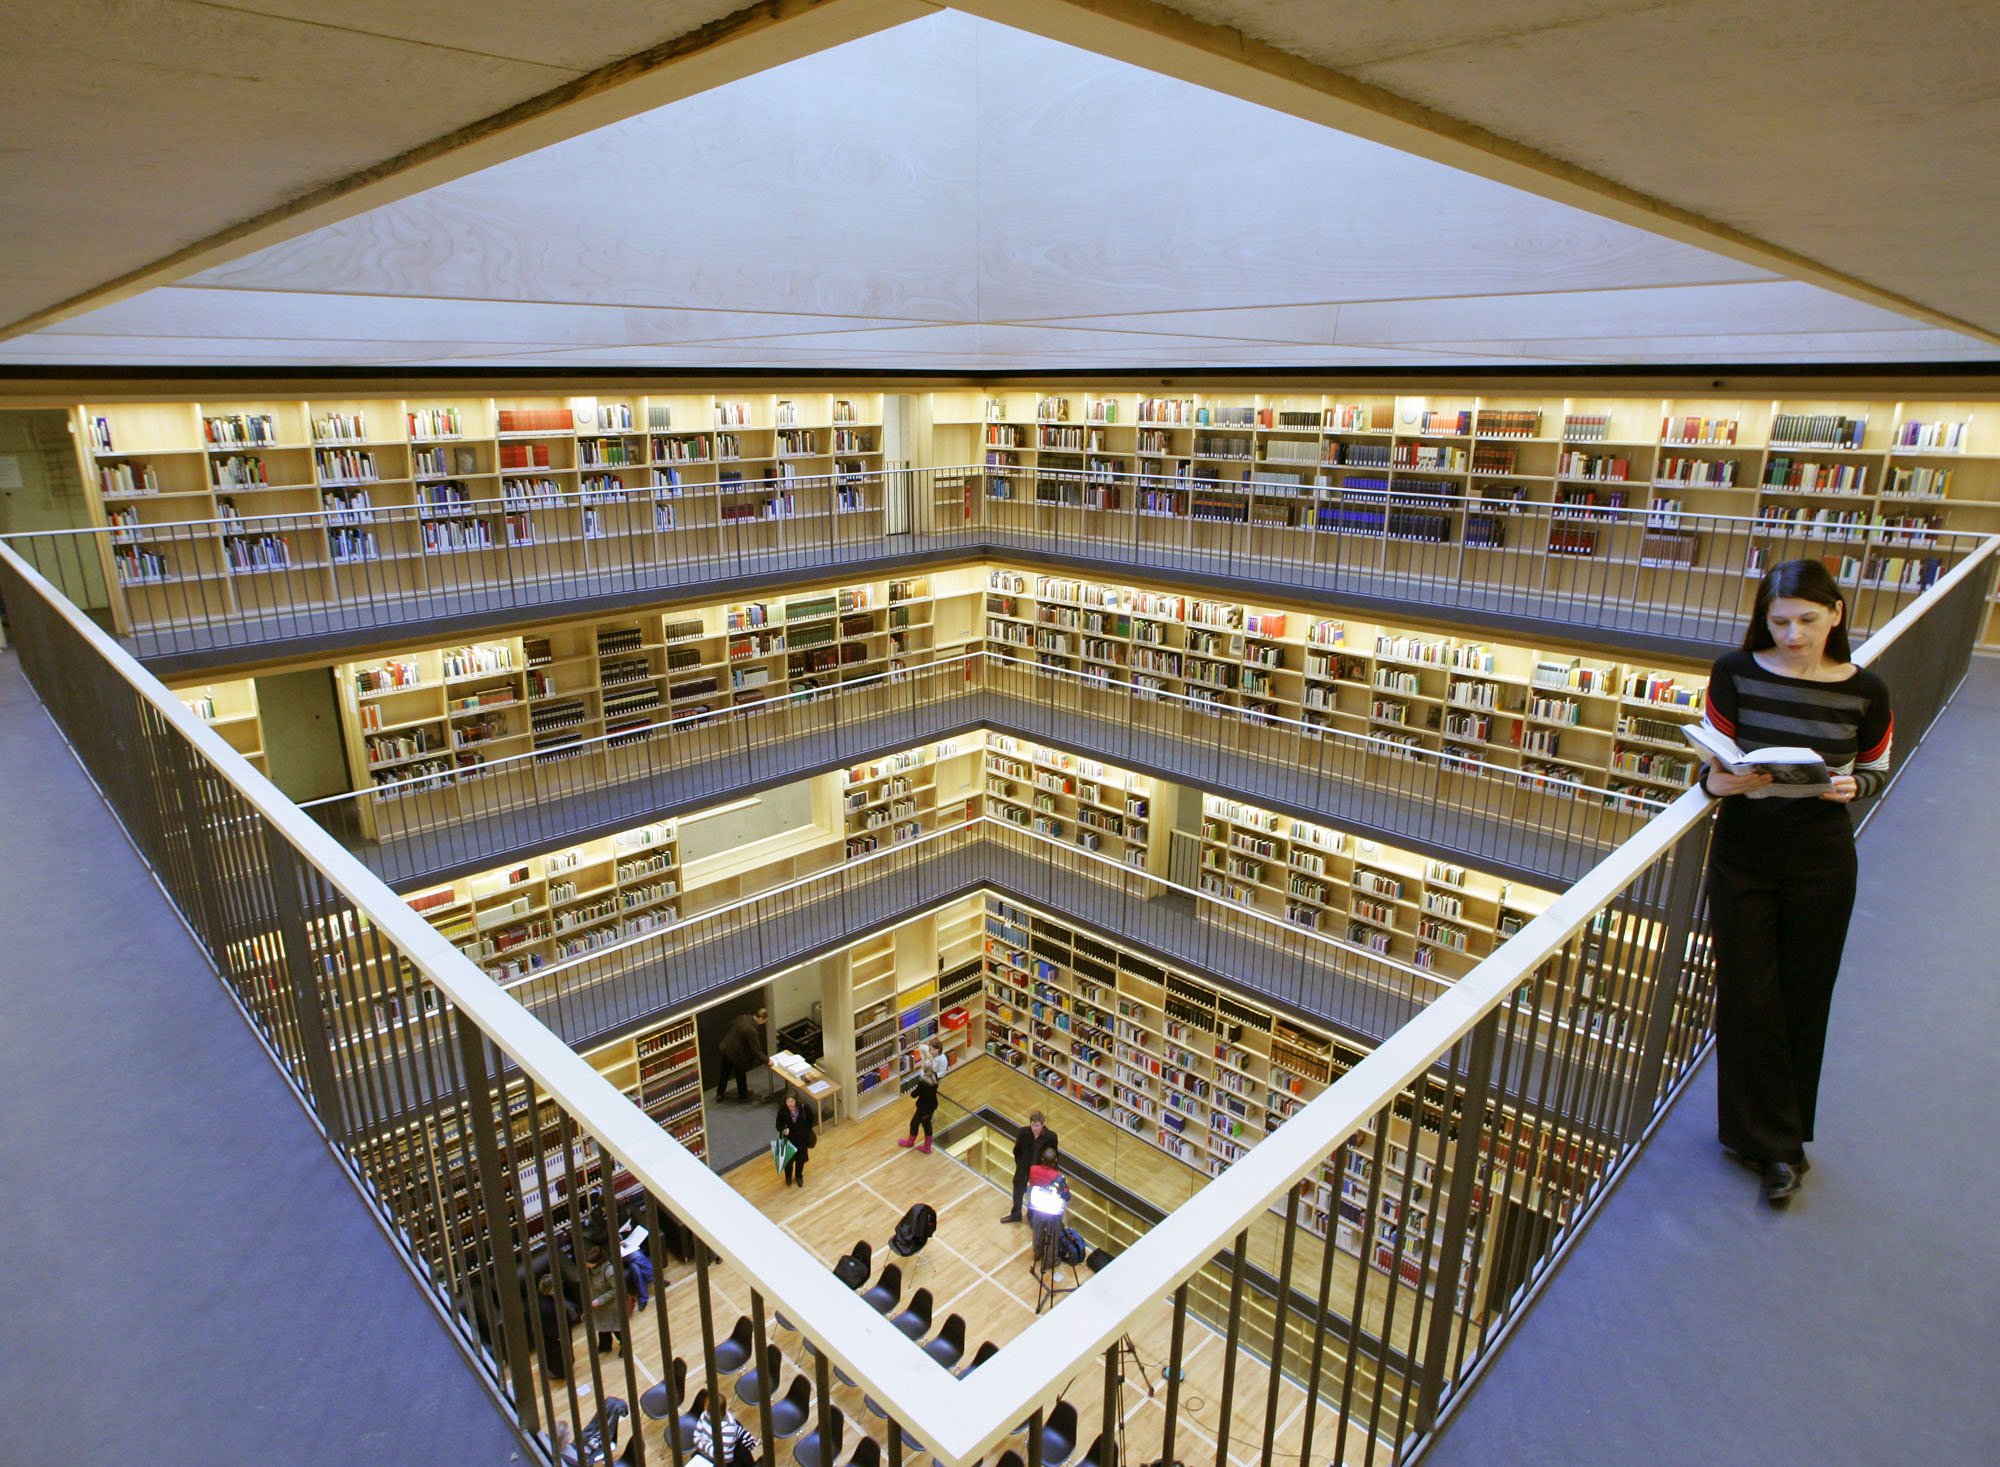 Βιβλιοθήκη χωρίς βιβλία: O tempora, o mores!